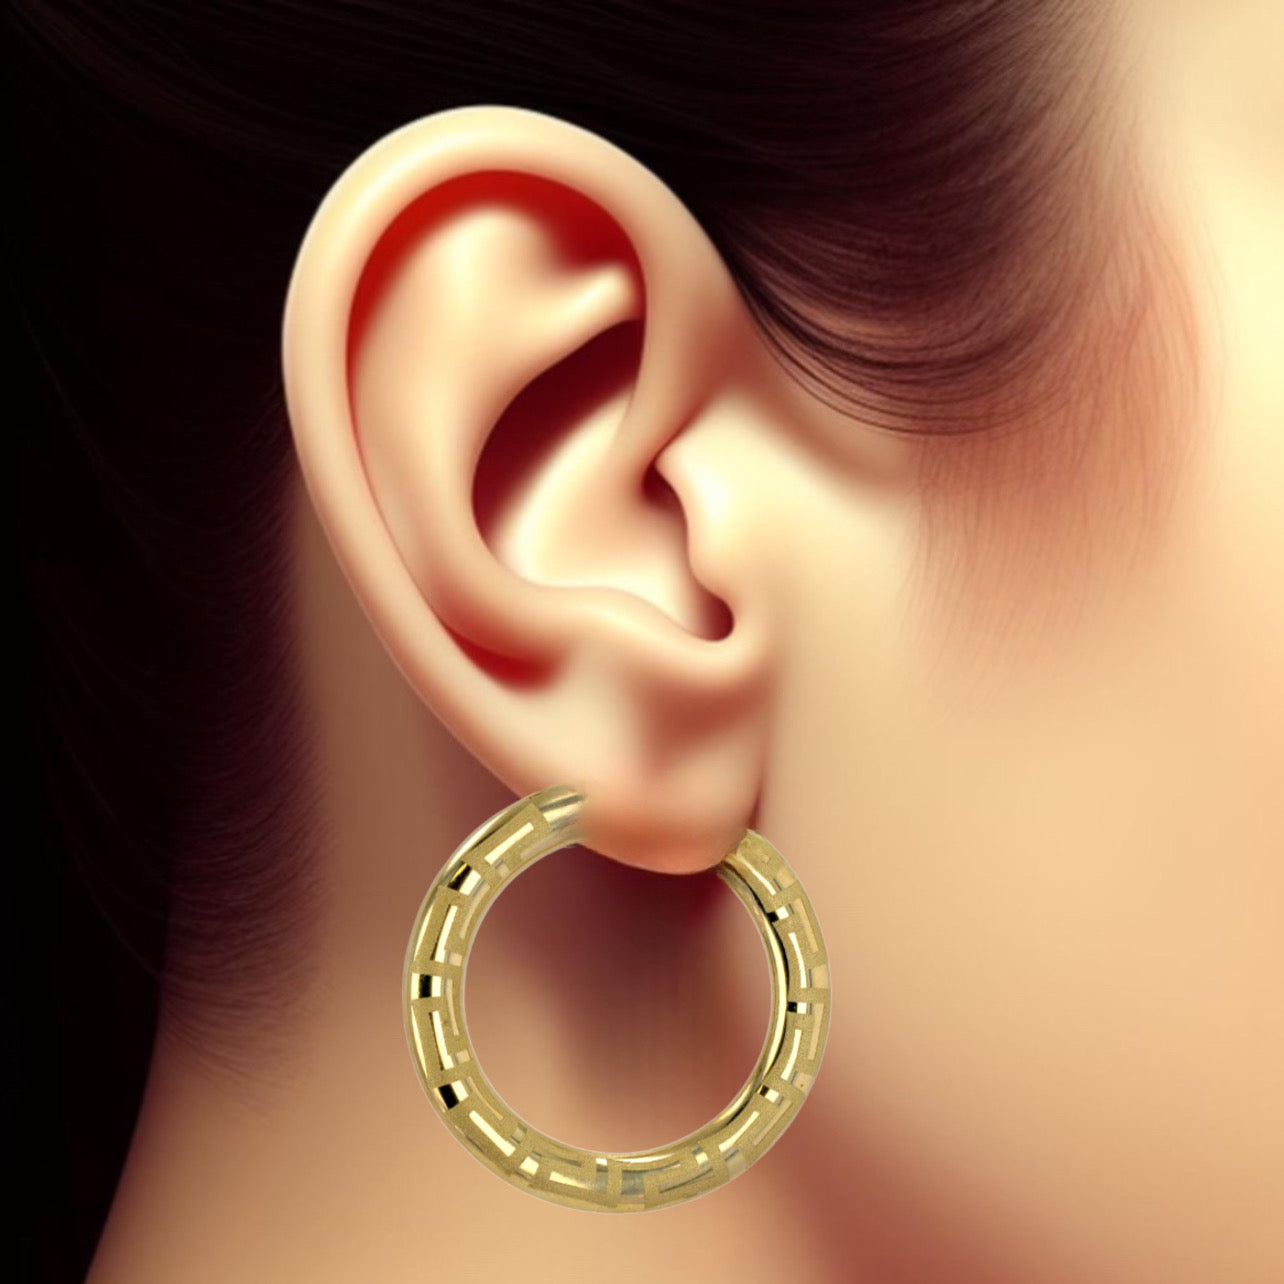 10K Yellow Gold Greek Style hoops earrings-222796